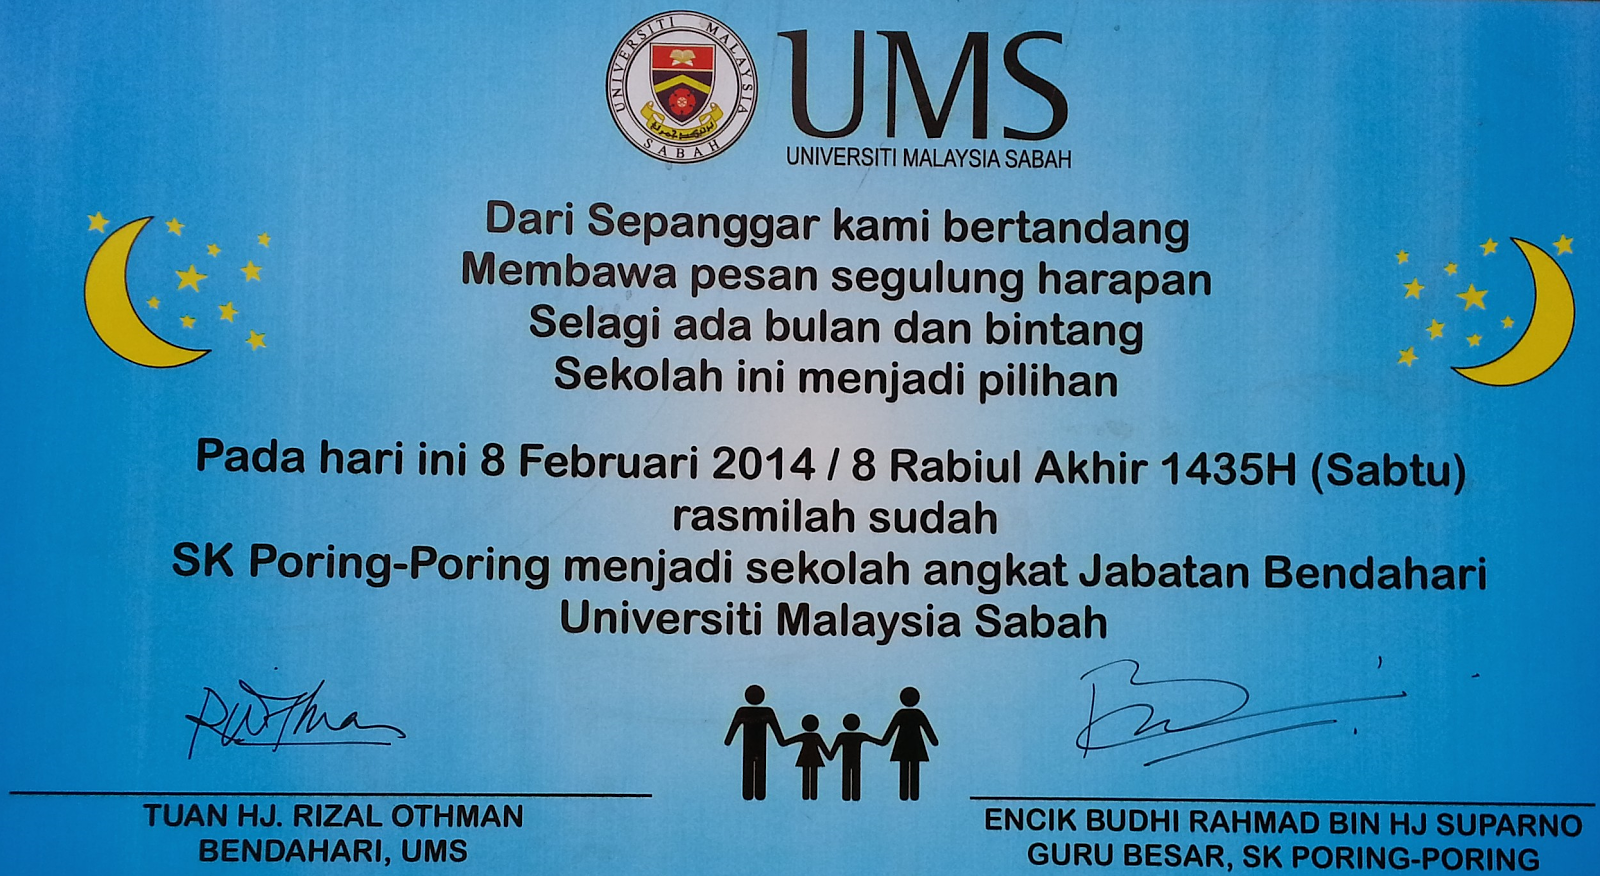 SEKOLAH ANGKAT BAGI;                    Jabatan Bendahari, Universiti Malaysia Sabah